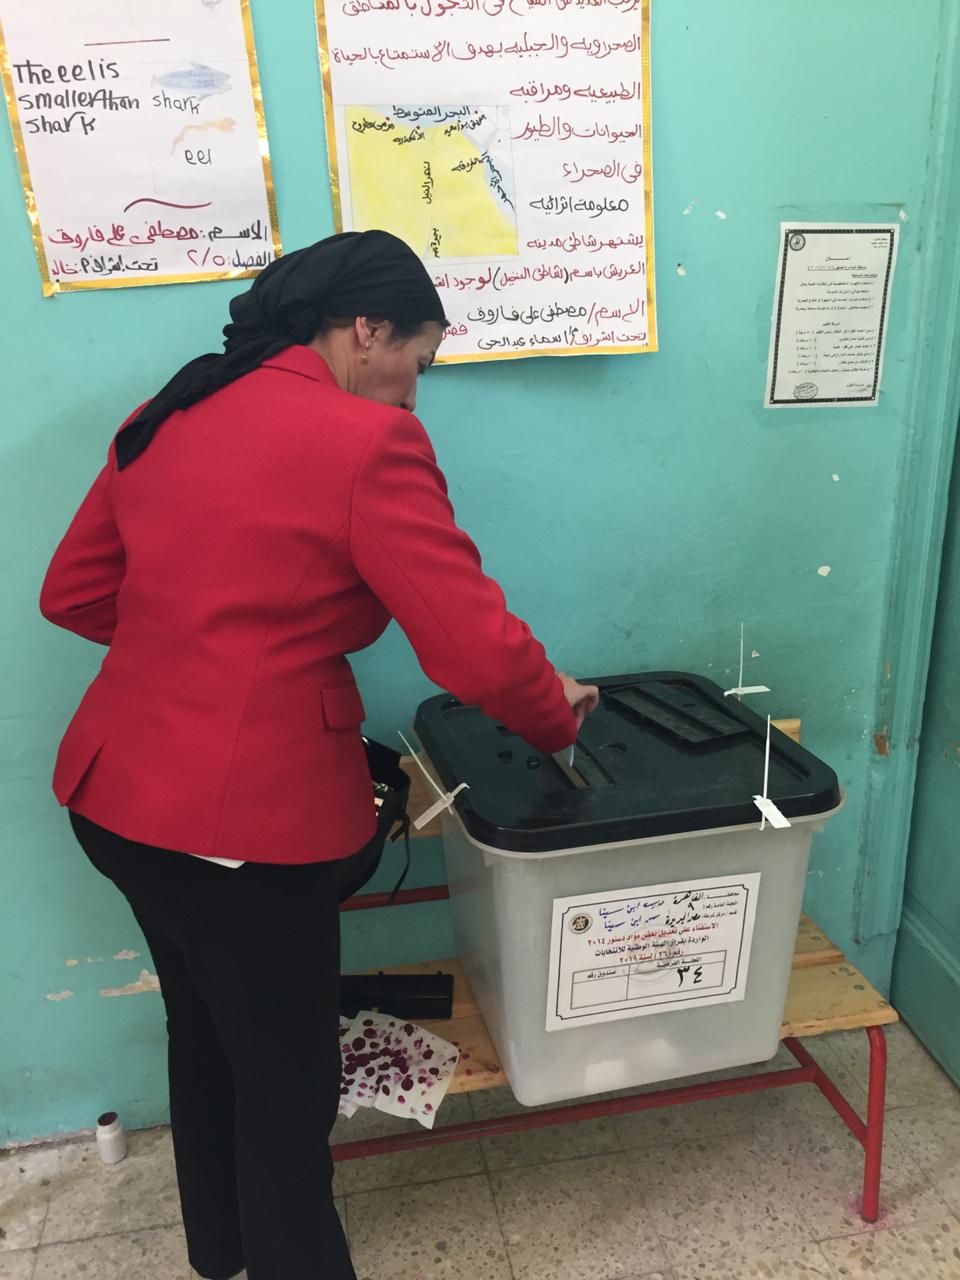 الدكتورة ياسمين فؤاد وزيرة البيئة تدلى بصوتها في الاستفتاء (2)